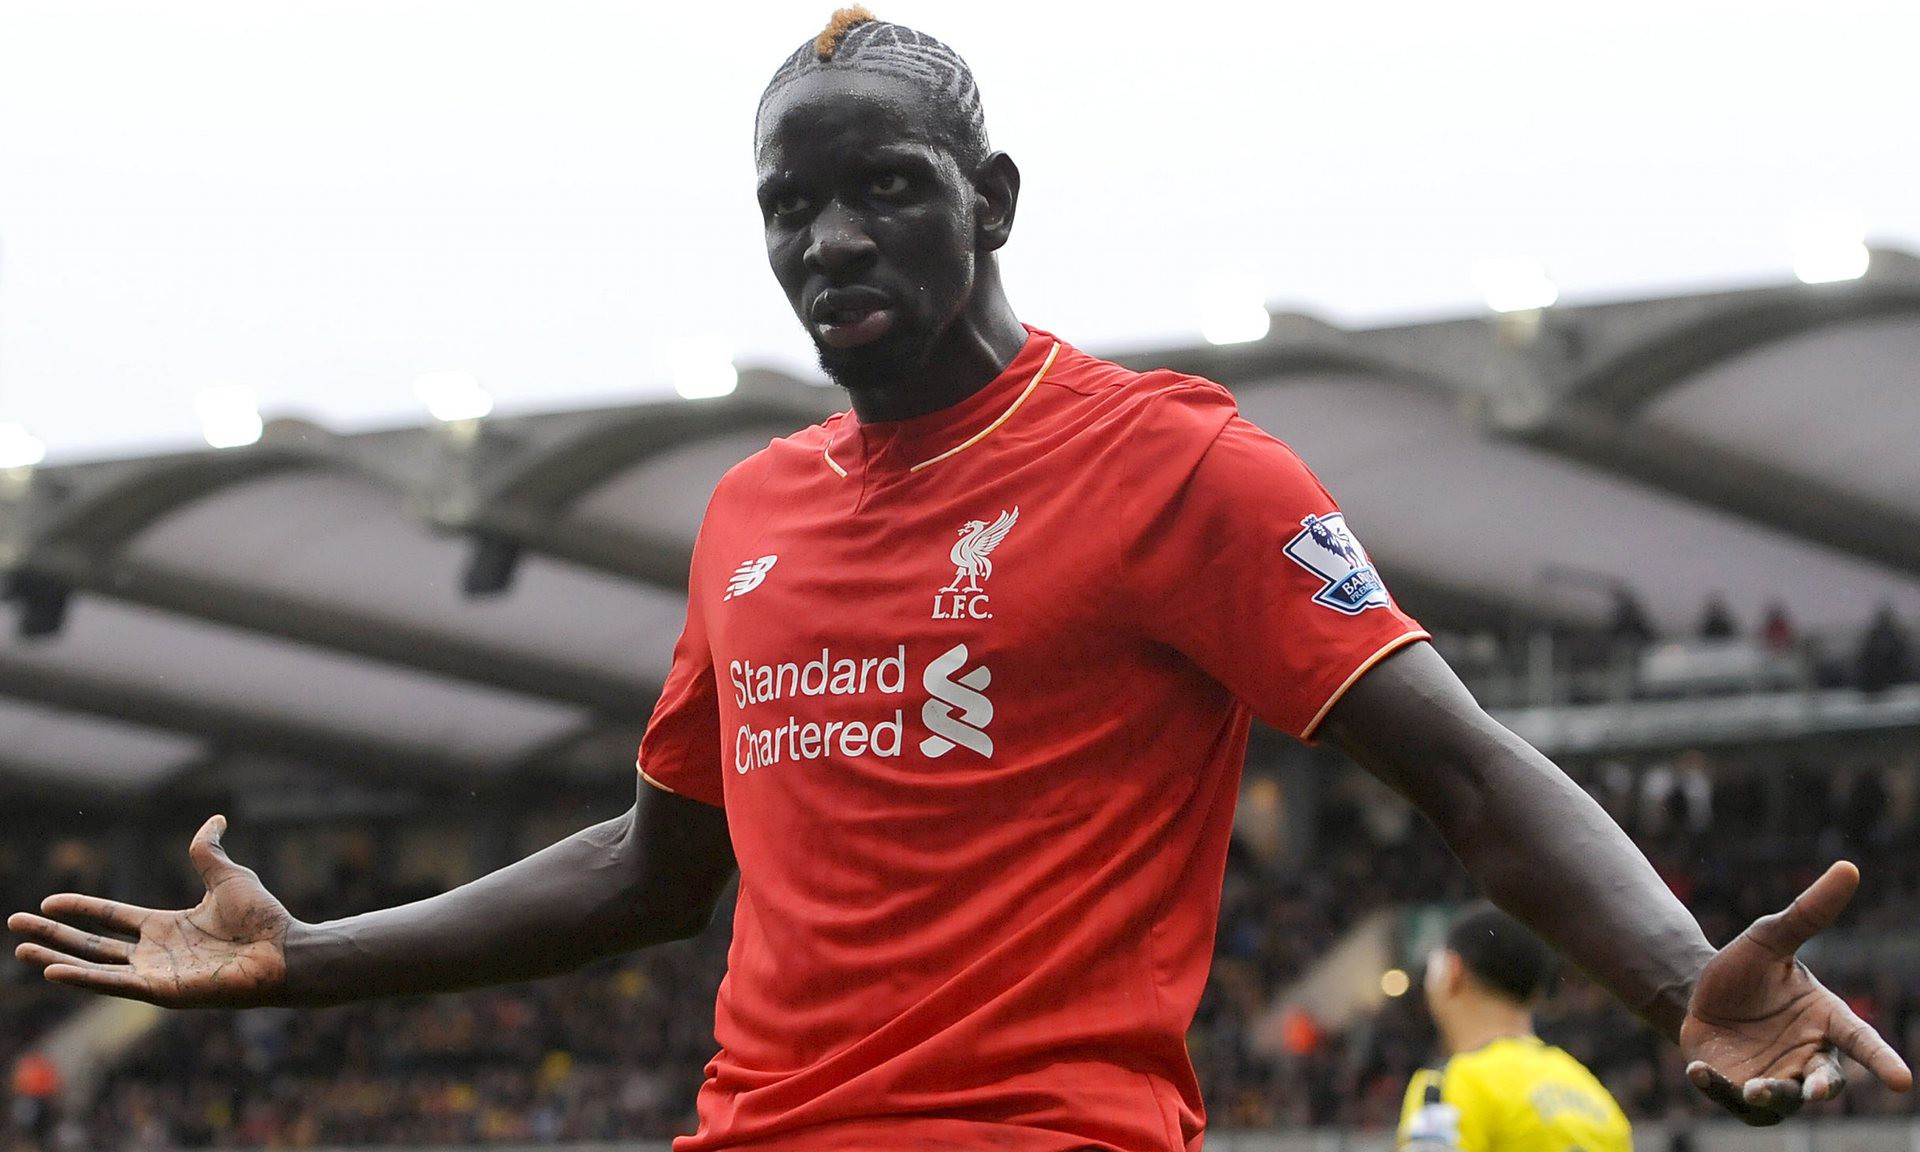 Mamadou Sakho (Liverpool) đang bị UEFA điều tra về tội dùng doping trận gặp Man Utd.